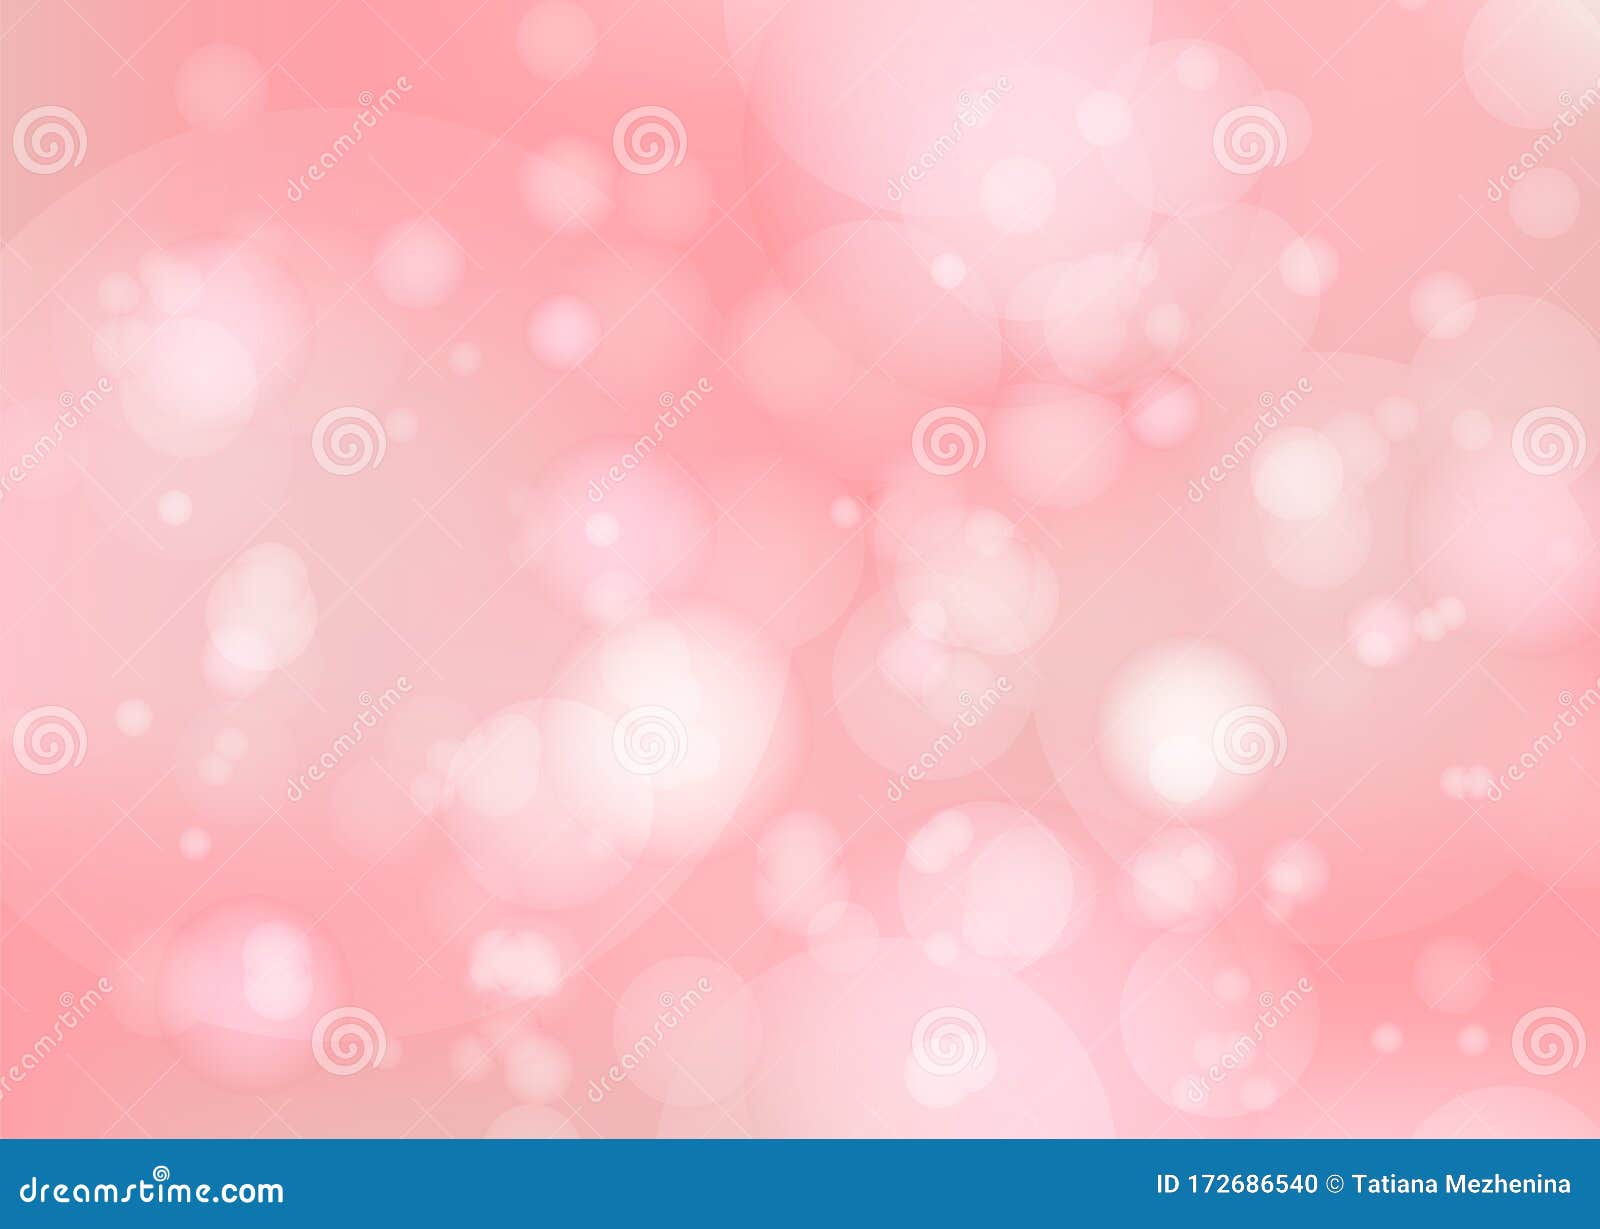 Hình nền phông nền hồng với hiệu ứng bong bóng là sự kết hợp hoàn hảo giữa màu sắc tươi sáng và sự lãng mạn của bong bóng. Hãy chiêm ngưỡng hình ảnh này để cảm nhận cảm giác nhẹ nhàng, đáng yêu và vui tươi như khi bạn đang ngập tràn niềm vui trong những bong bóng bay lượn.